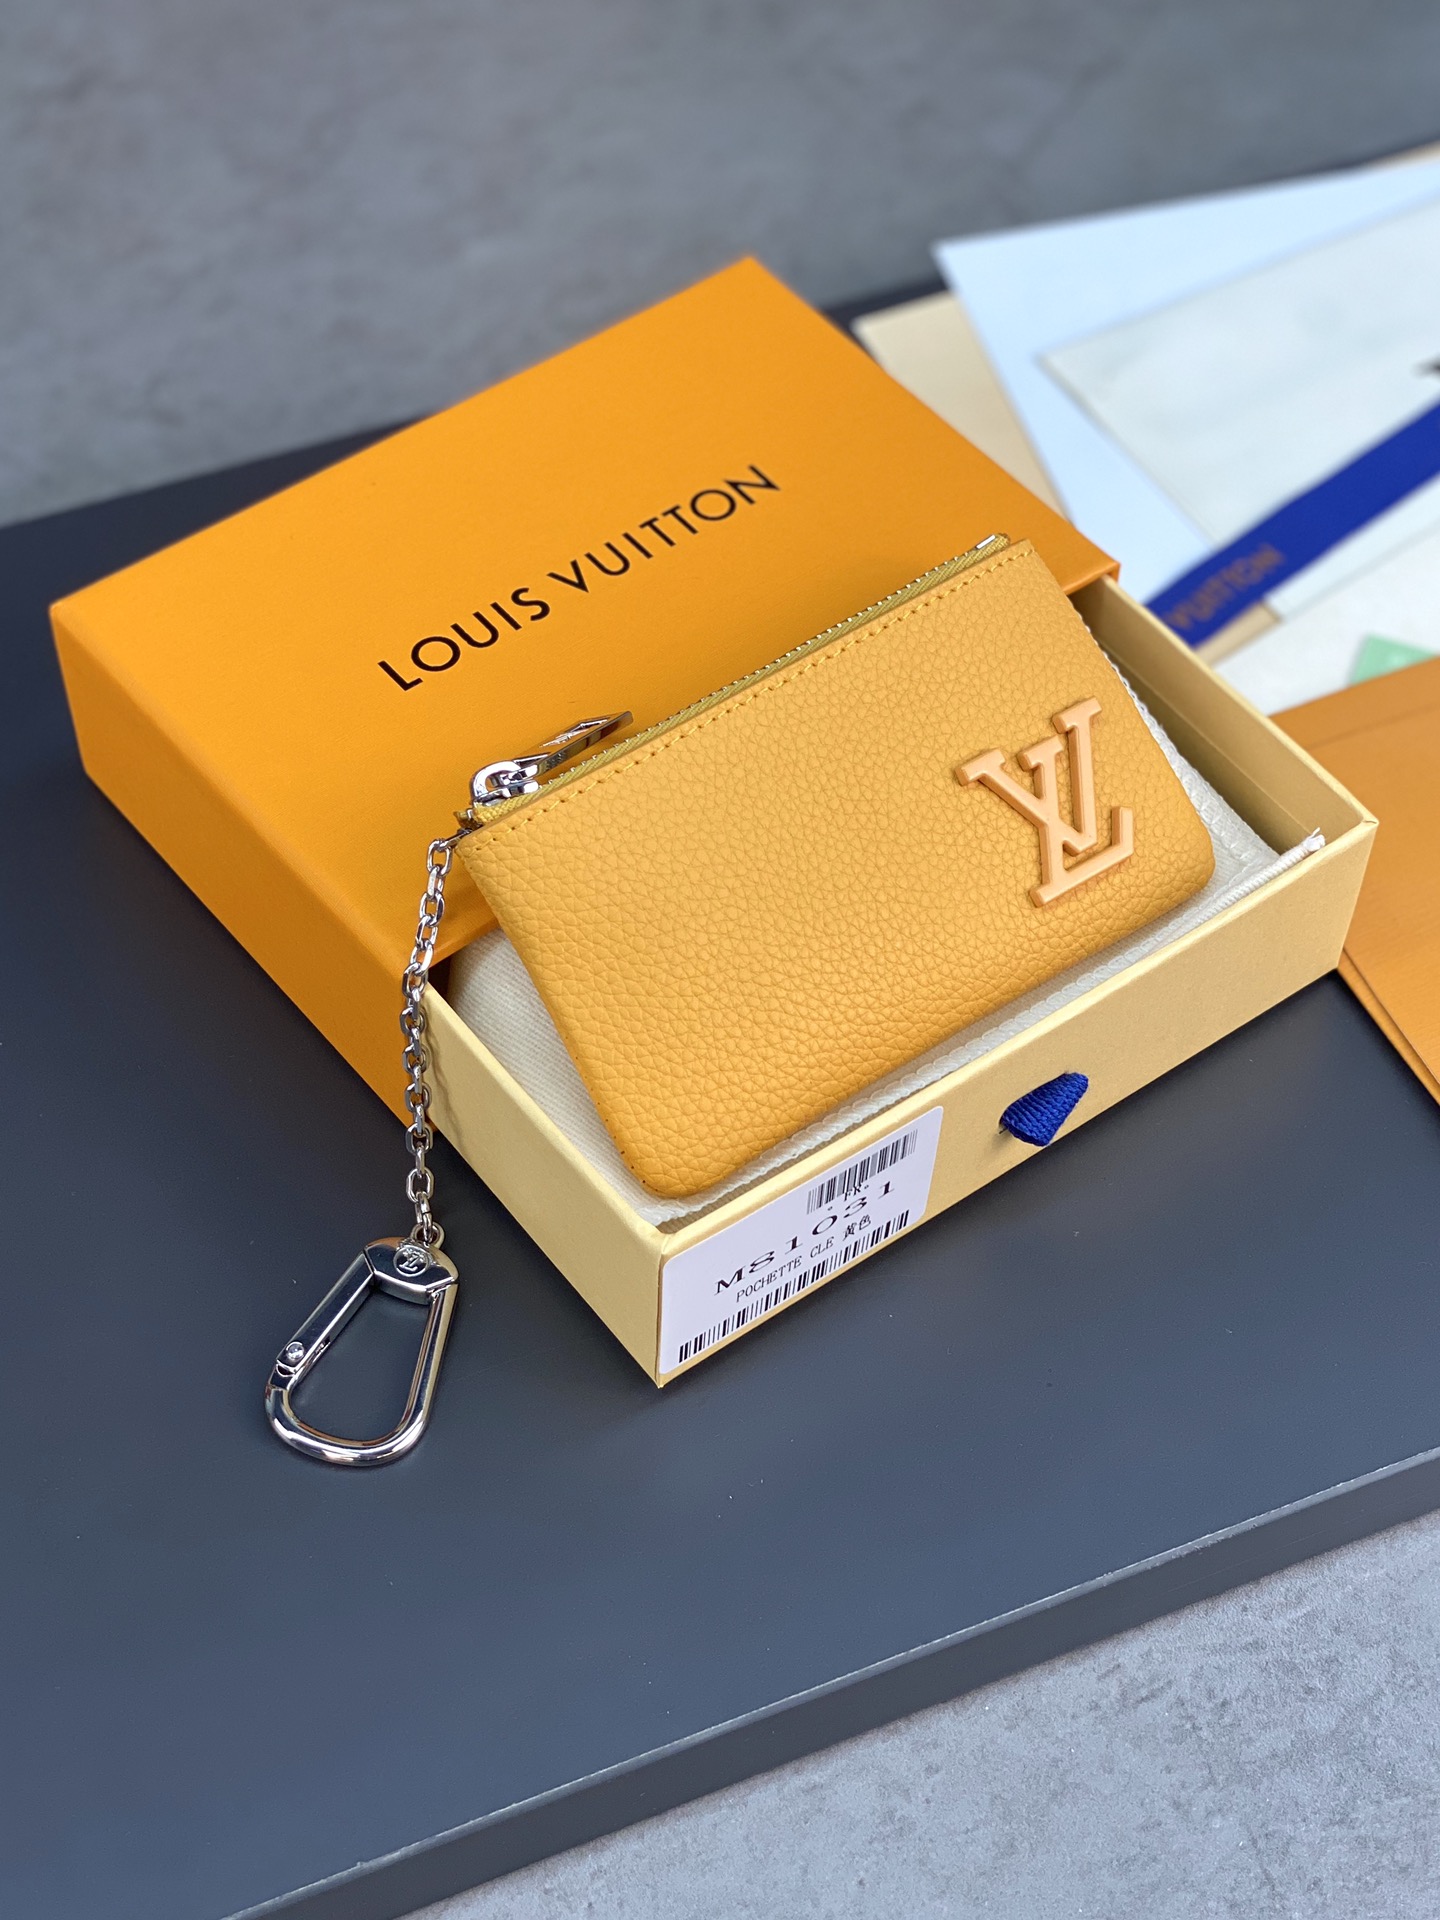 M81031黄色  匙 钥 零钱包 列 系  雅致 实 又 用 小 的 皮 包   放 供 零钱和钥 匙 之用   可轻   放 易 到 袋 手  衣 或 服口 袋 12.0x 7.0 cm  长x 高  